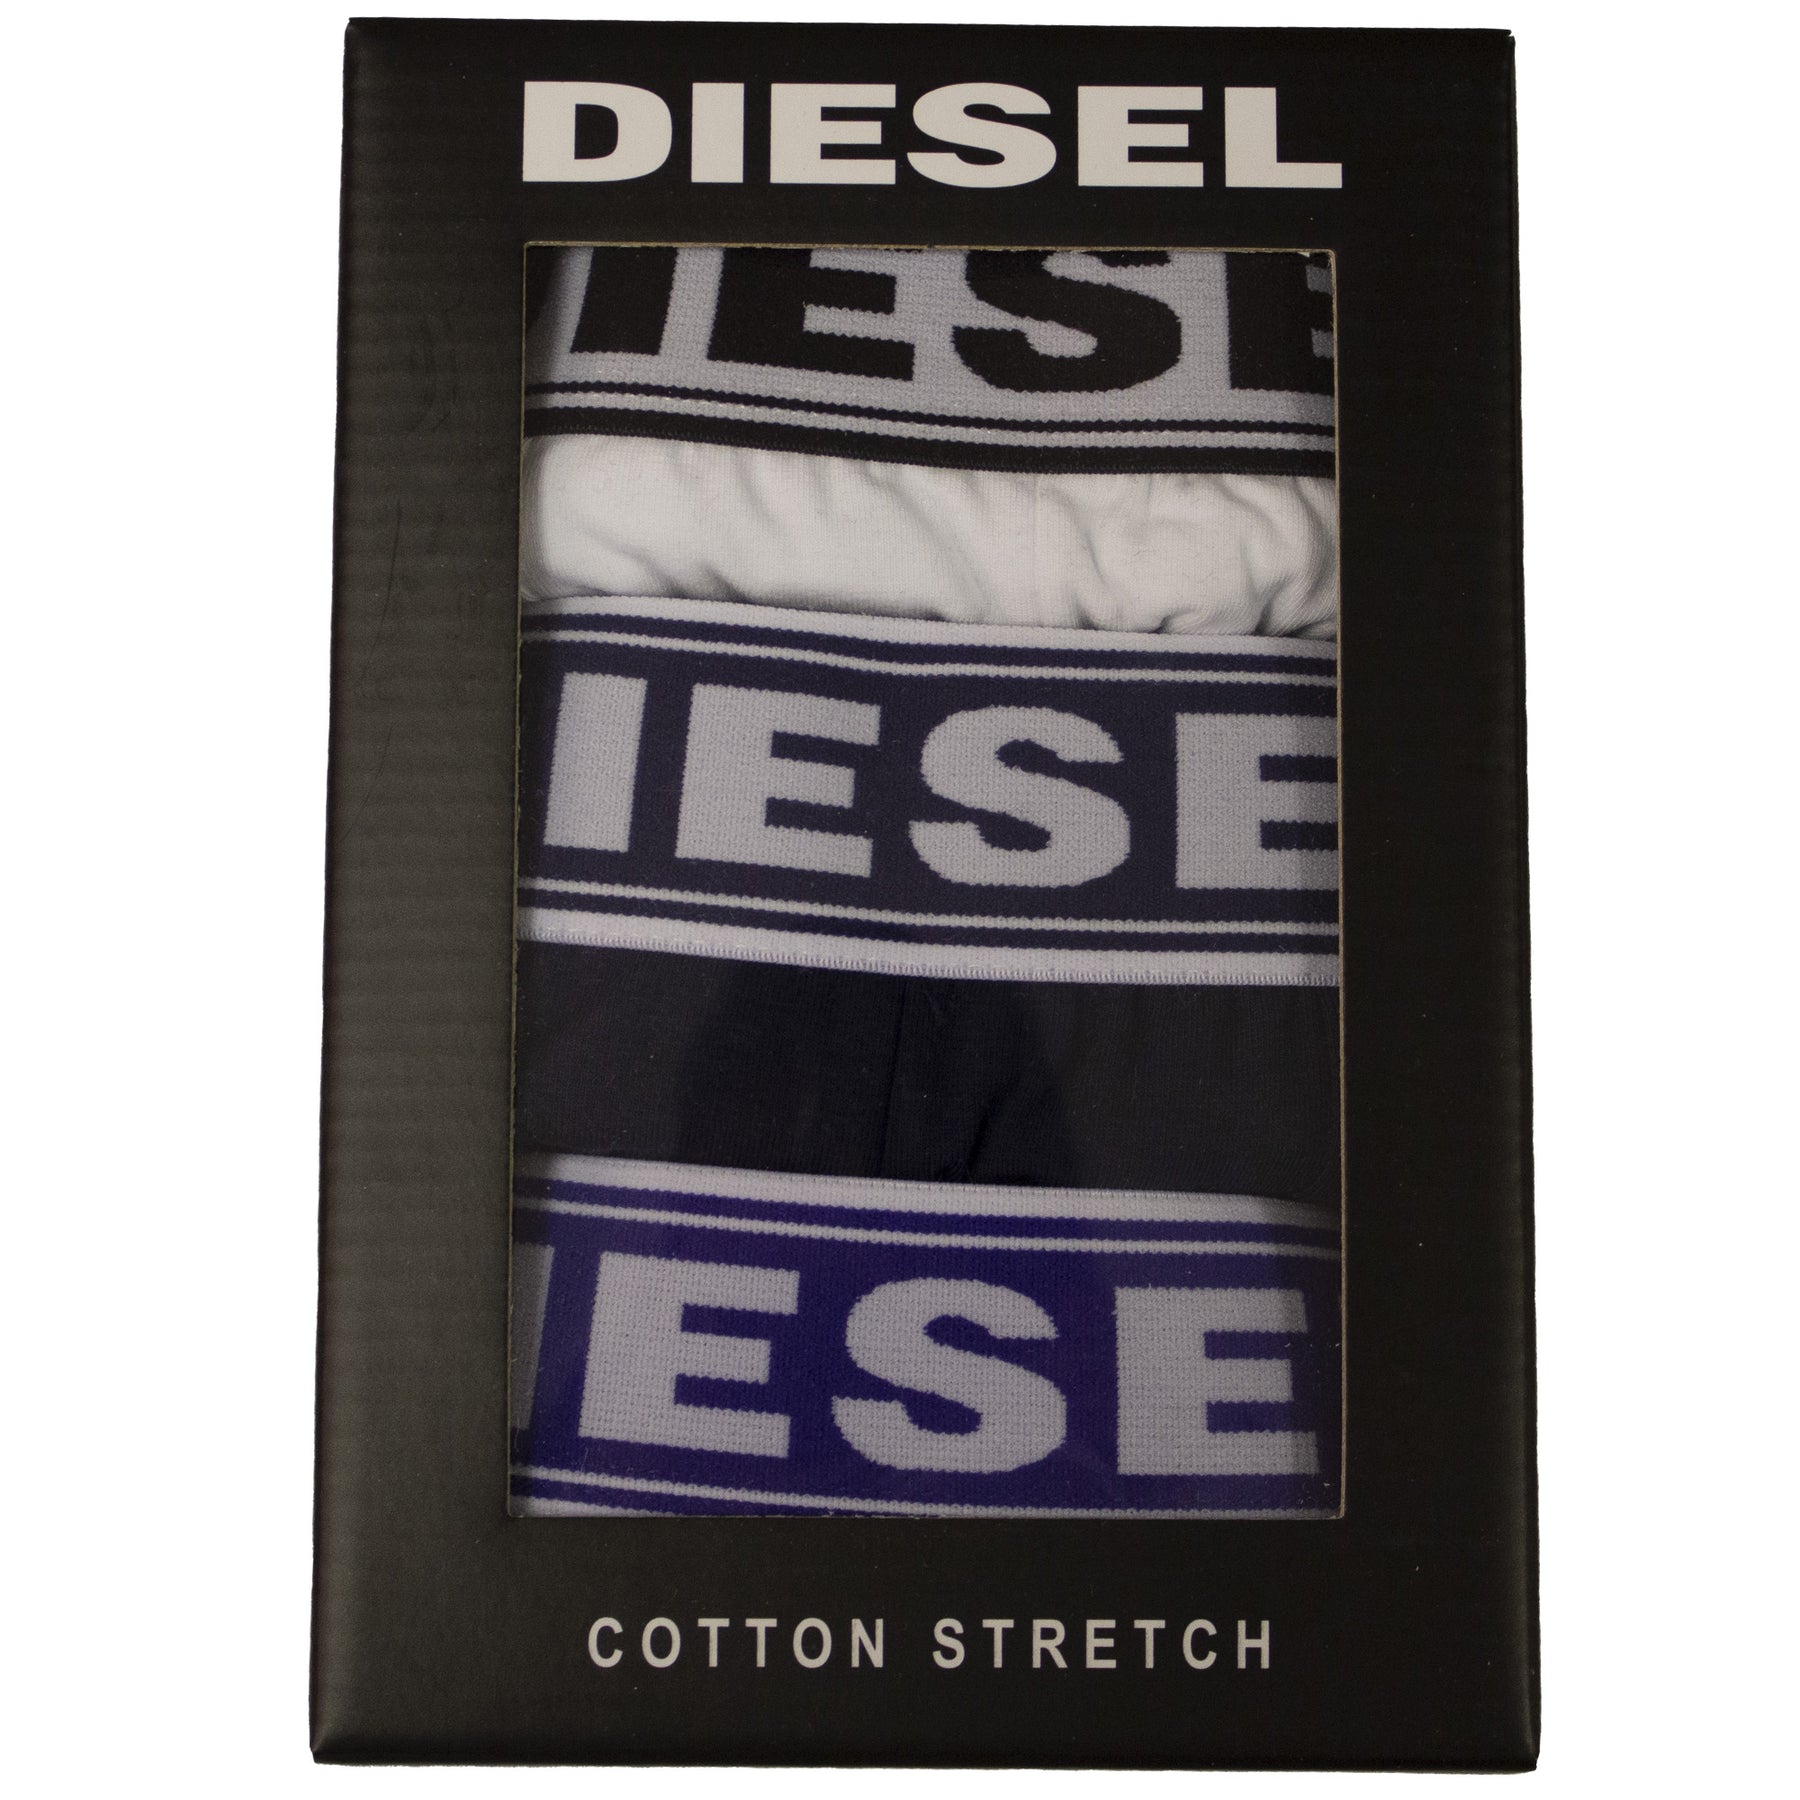 DIESEL_BXRS ALL-3PK Copy of Diesel | Mens Assorted Boxers (3 Pack) DIESEL RAWDENIM